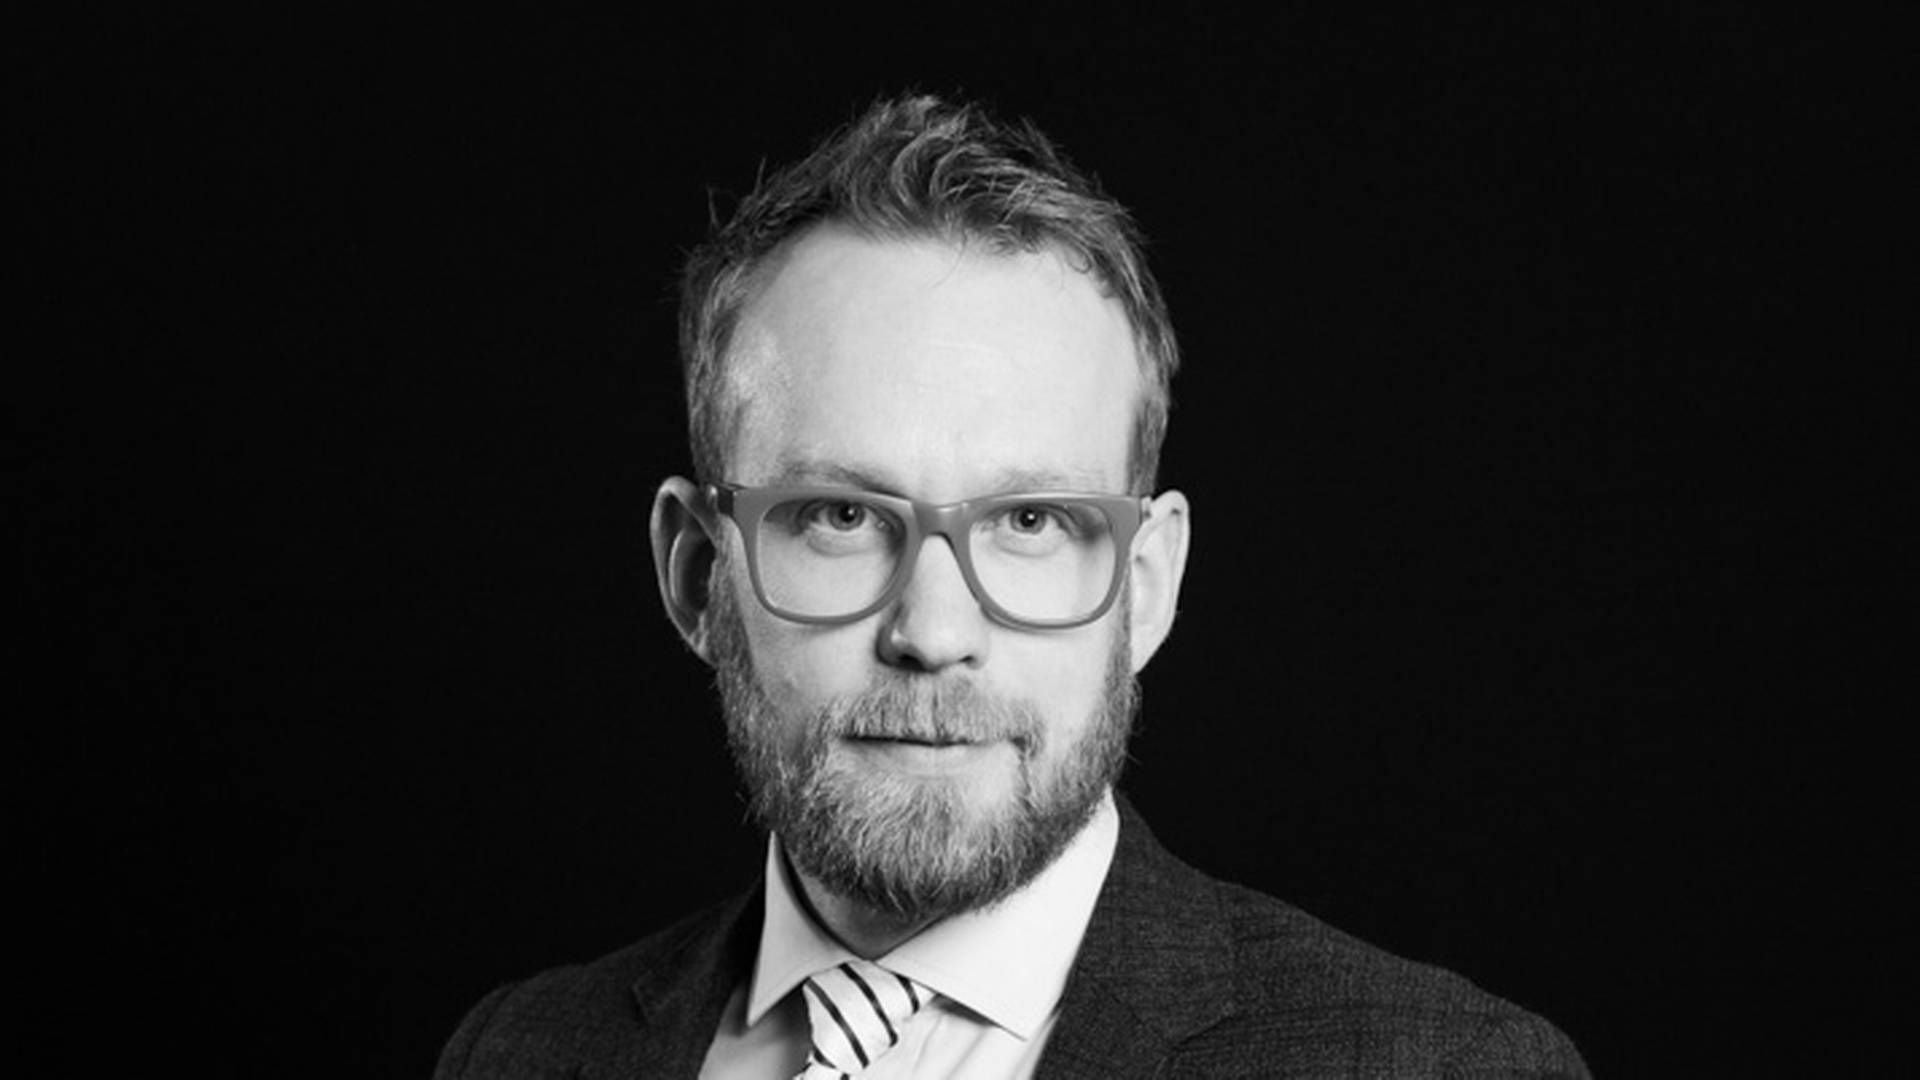 Kurator Morten Bøgenskjold fra enp-advokater er blevet udpeget som kurator i konkursboet efter Finansteam, der har den svindelsigtede Michael Søren Bak som ejer. | Foto: enp-advokater